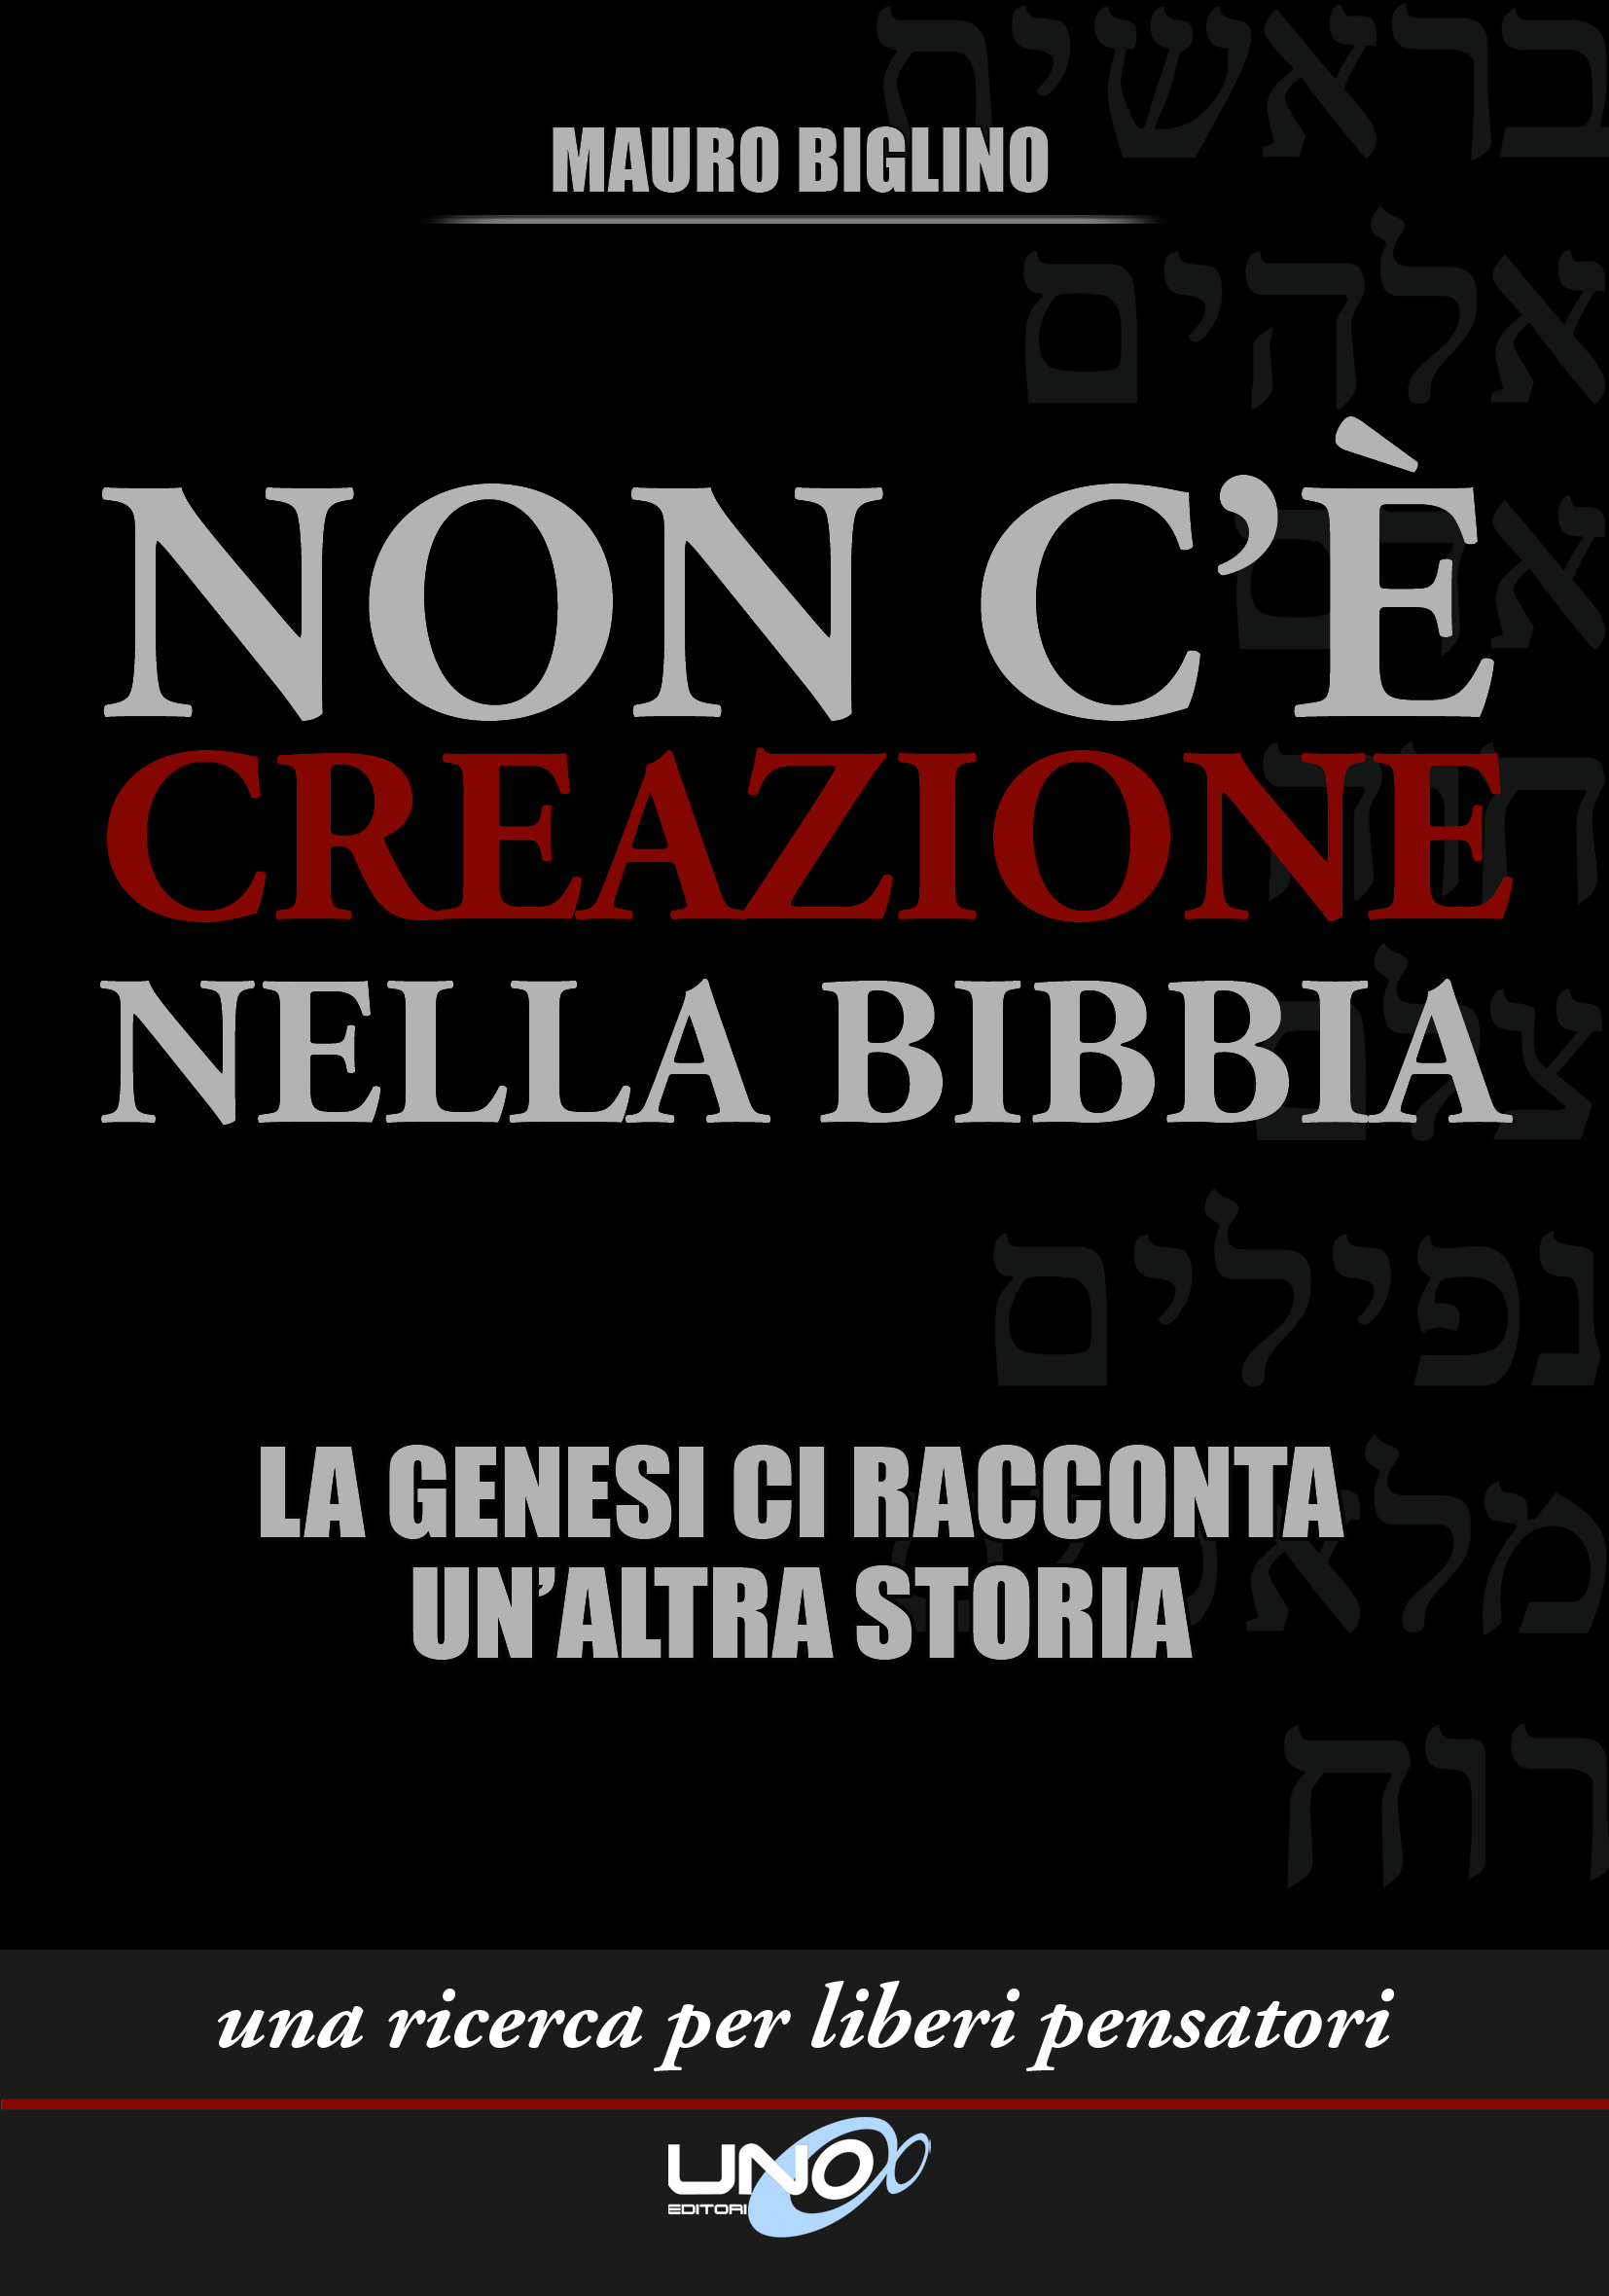 Non c’è creazione nella Bibbia - Mauro Biglino (storia)